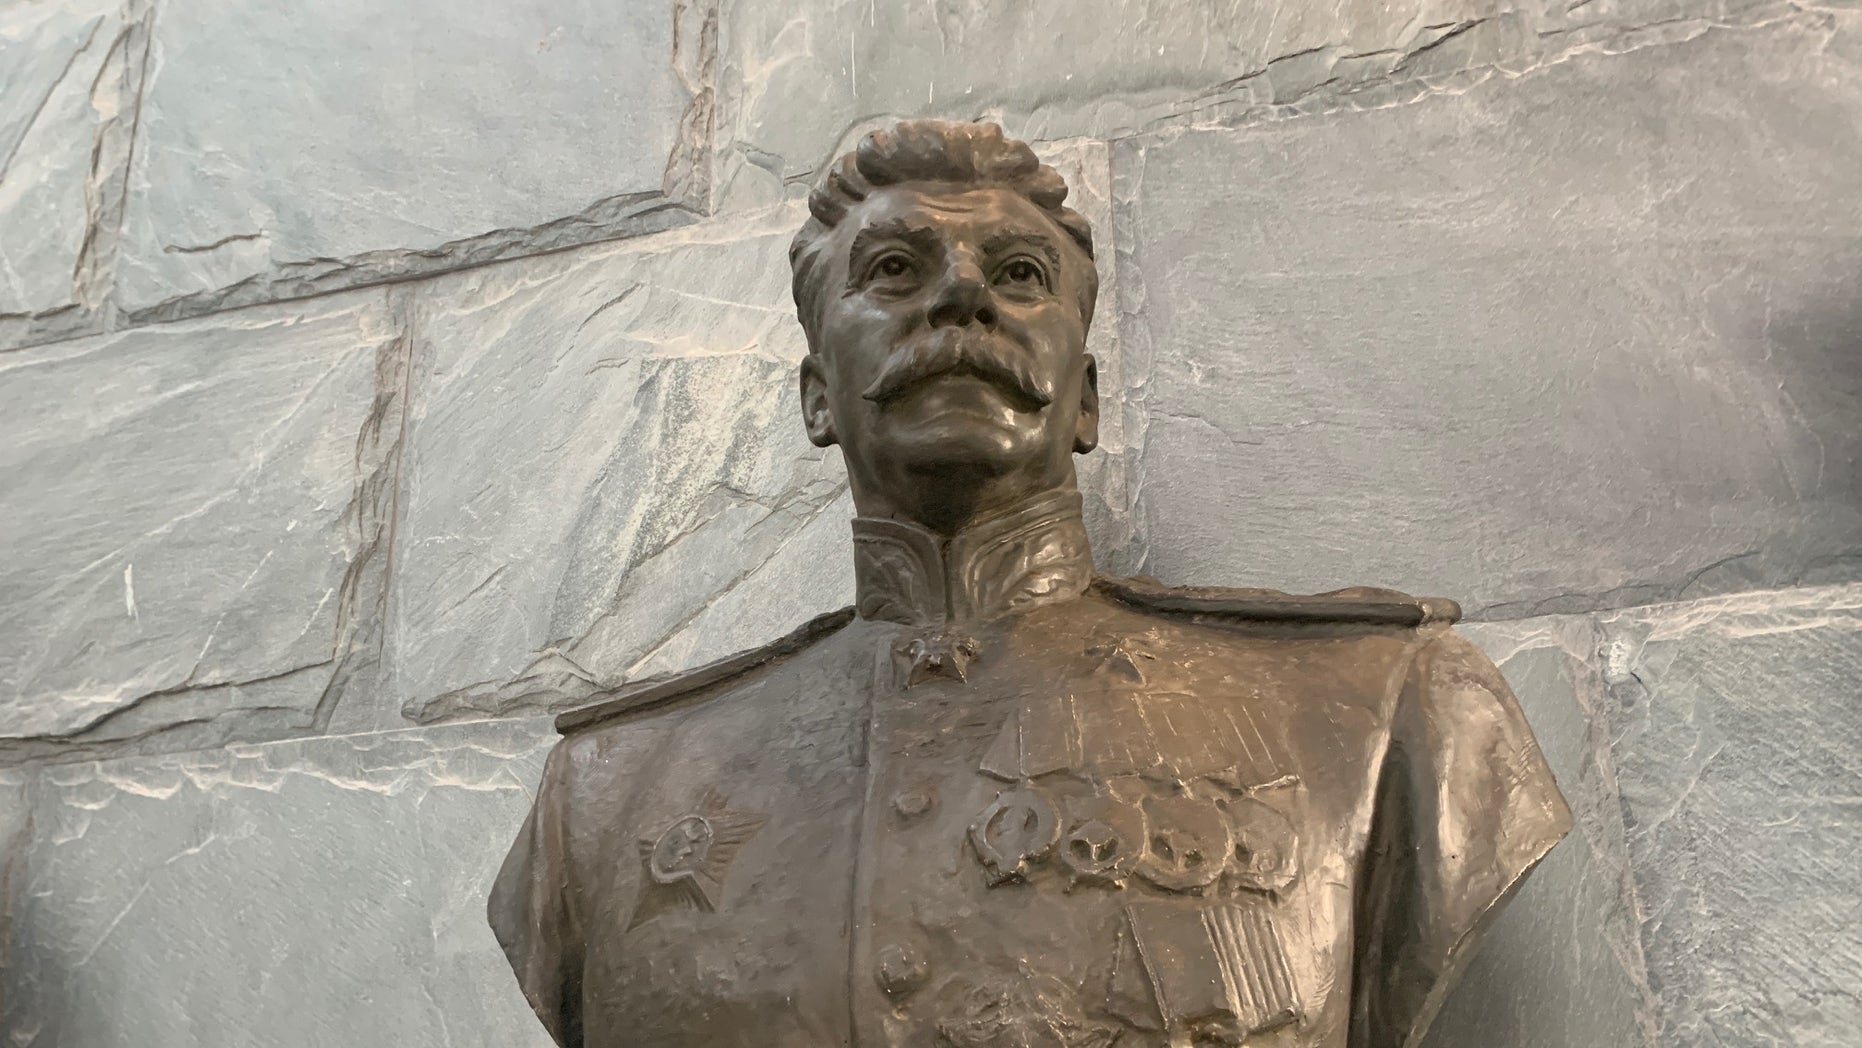 Joseph Stalin statue erected in Minsk, Belarus